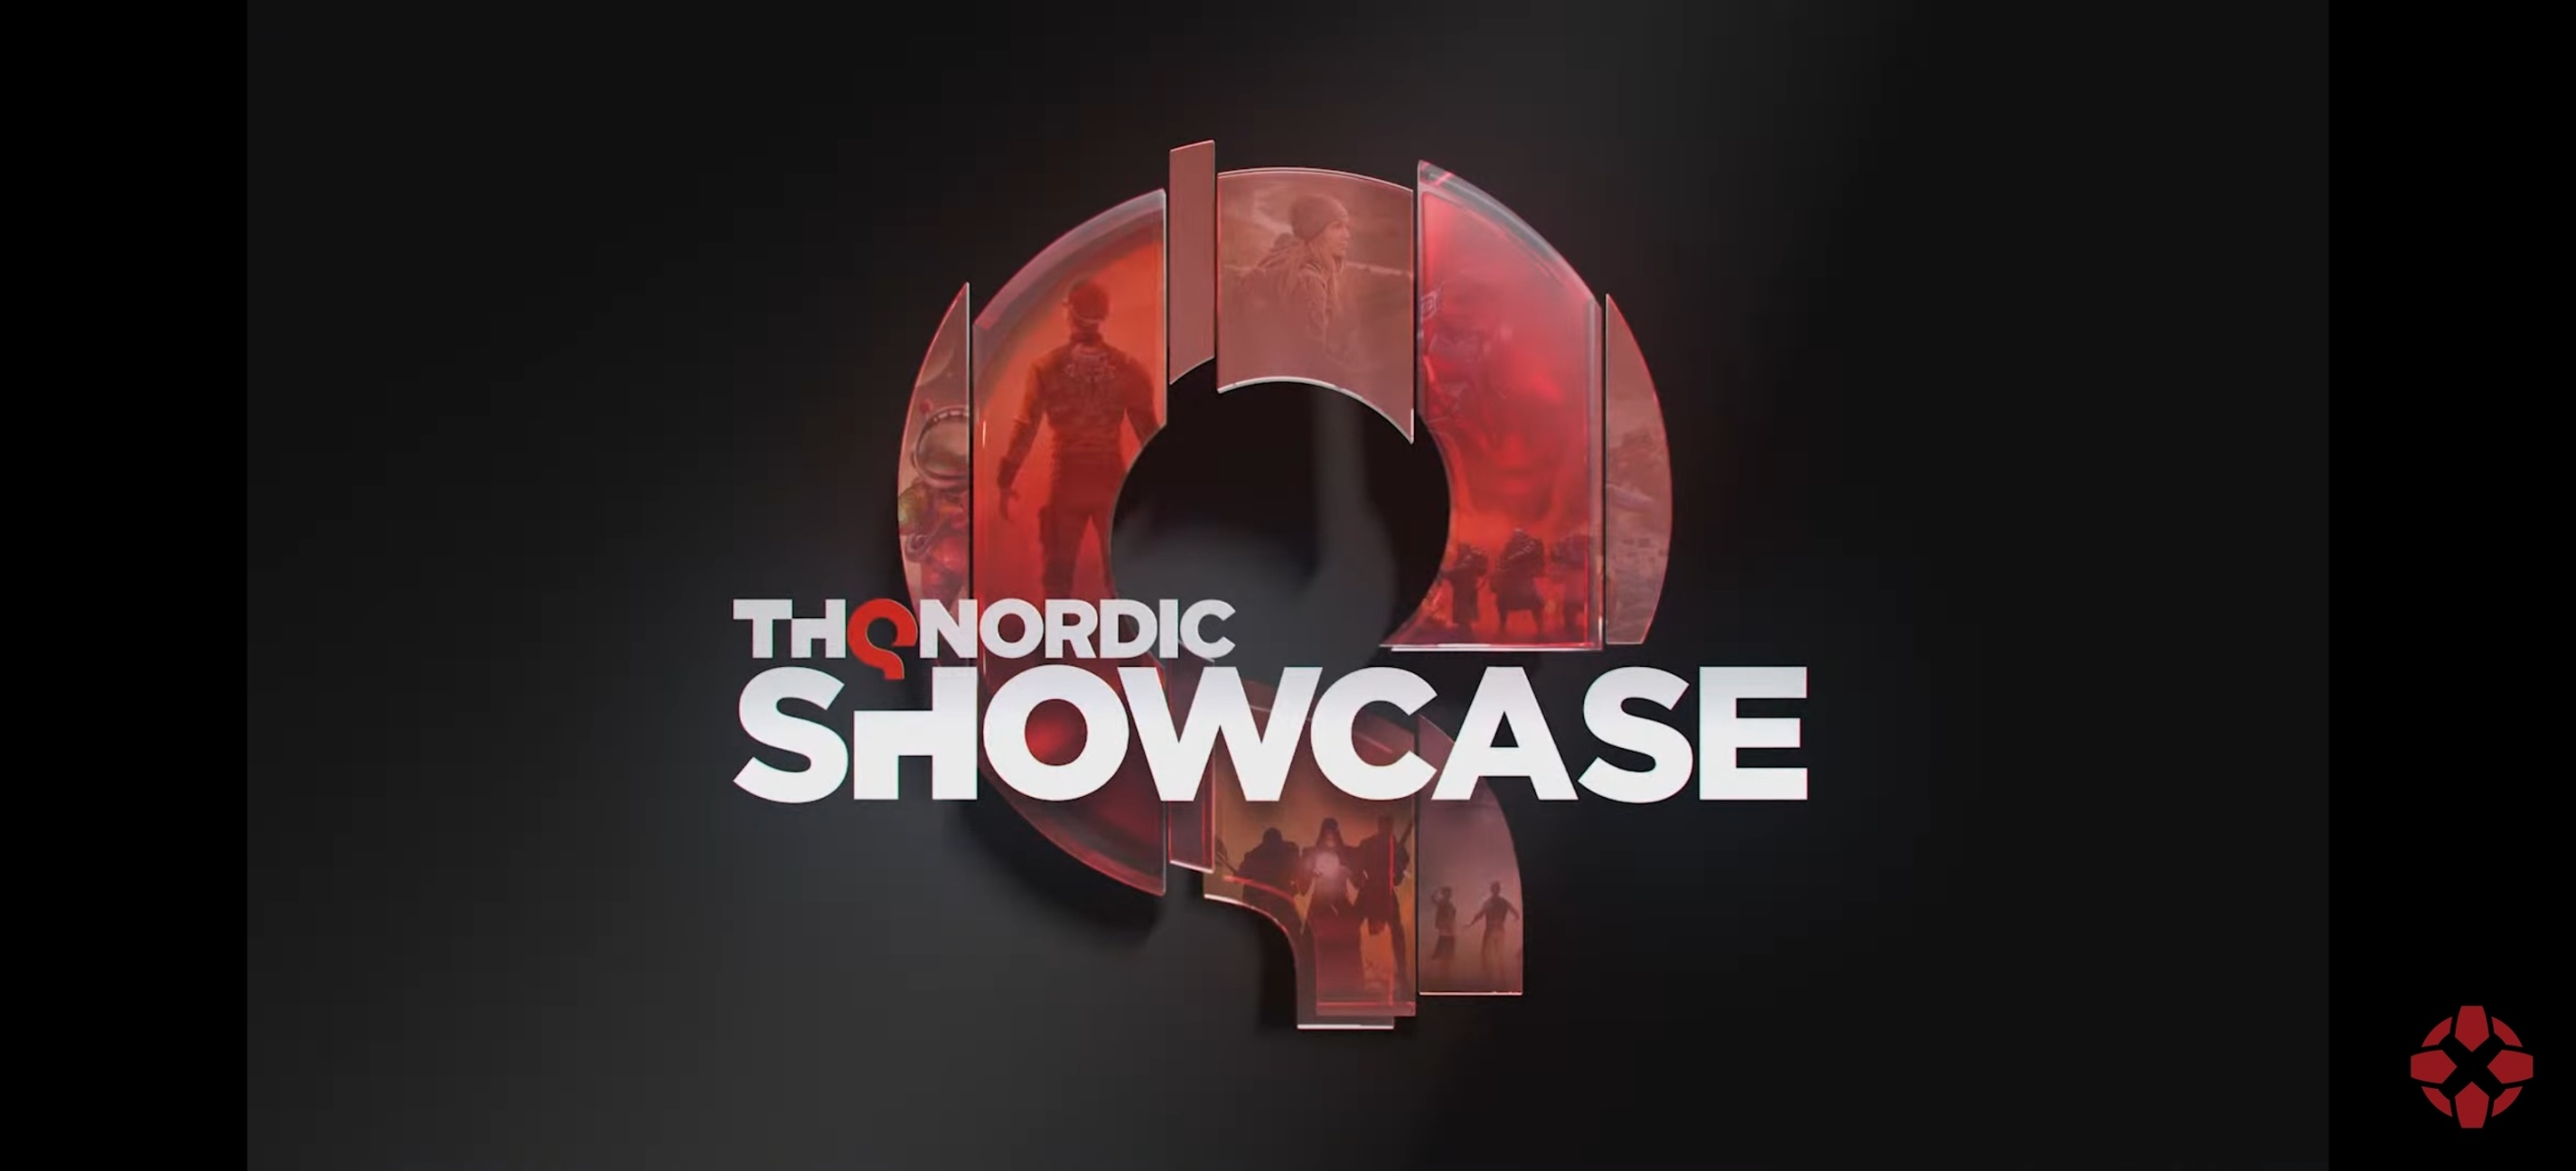 【PC遊戲】8.11THQ Nordic發佈會!哥特王朝重製泰坦之旅2